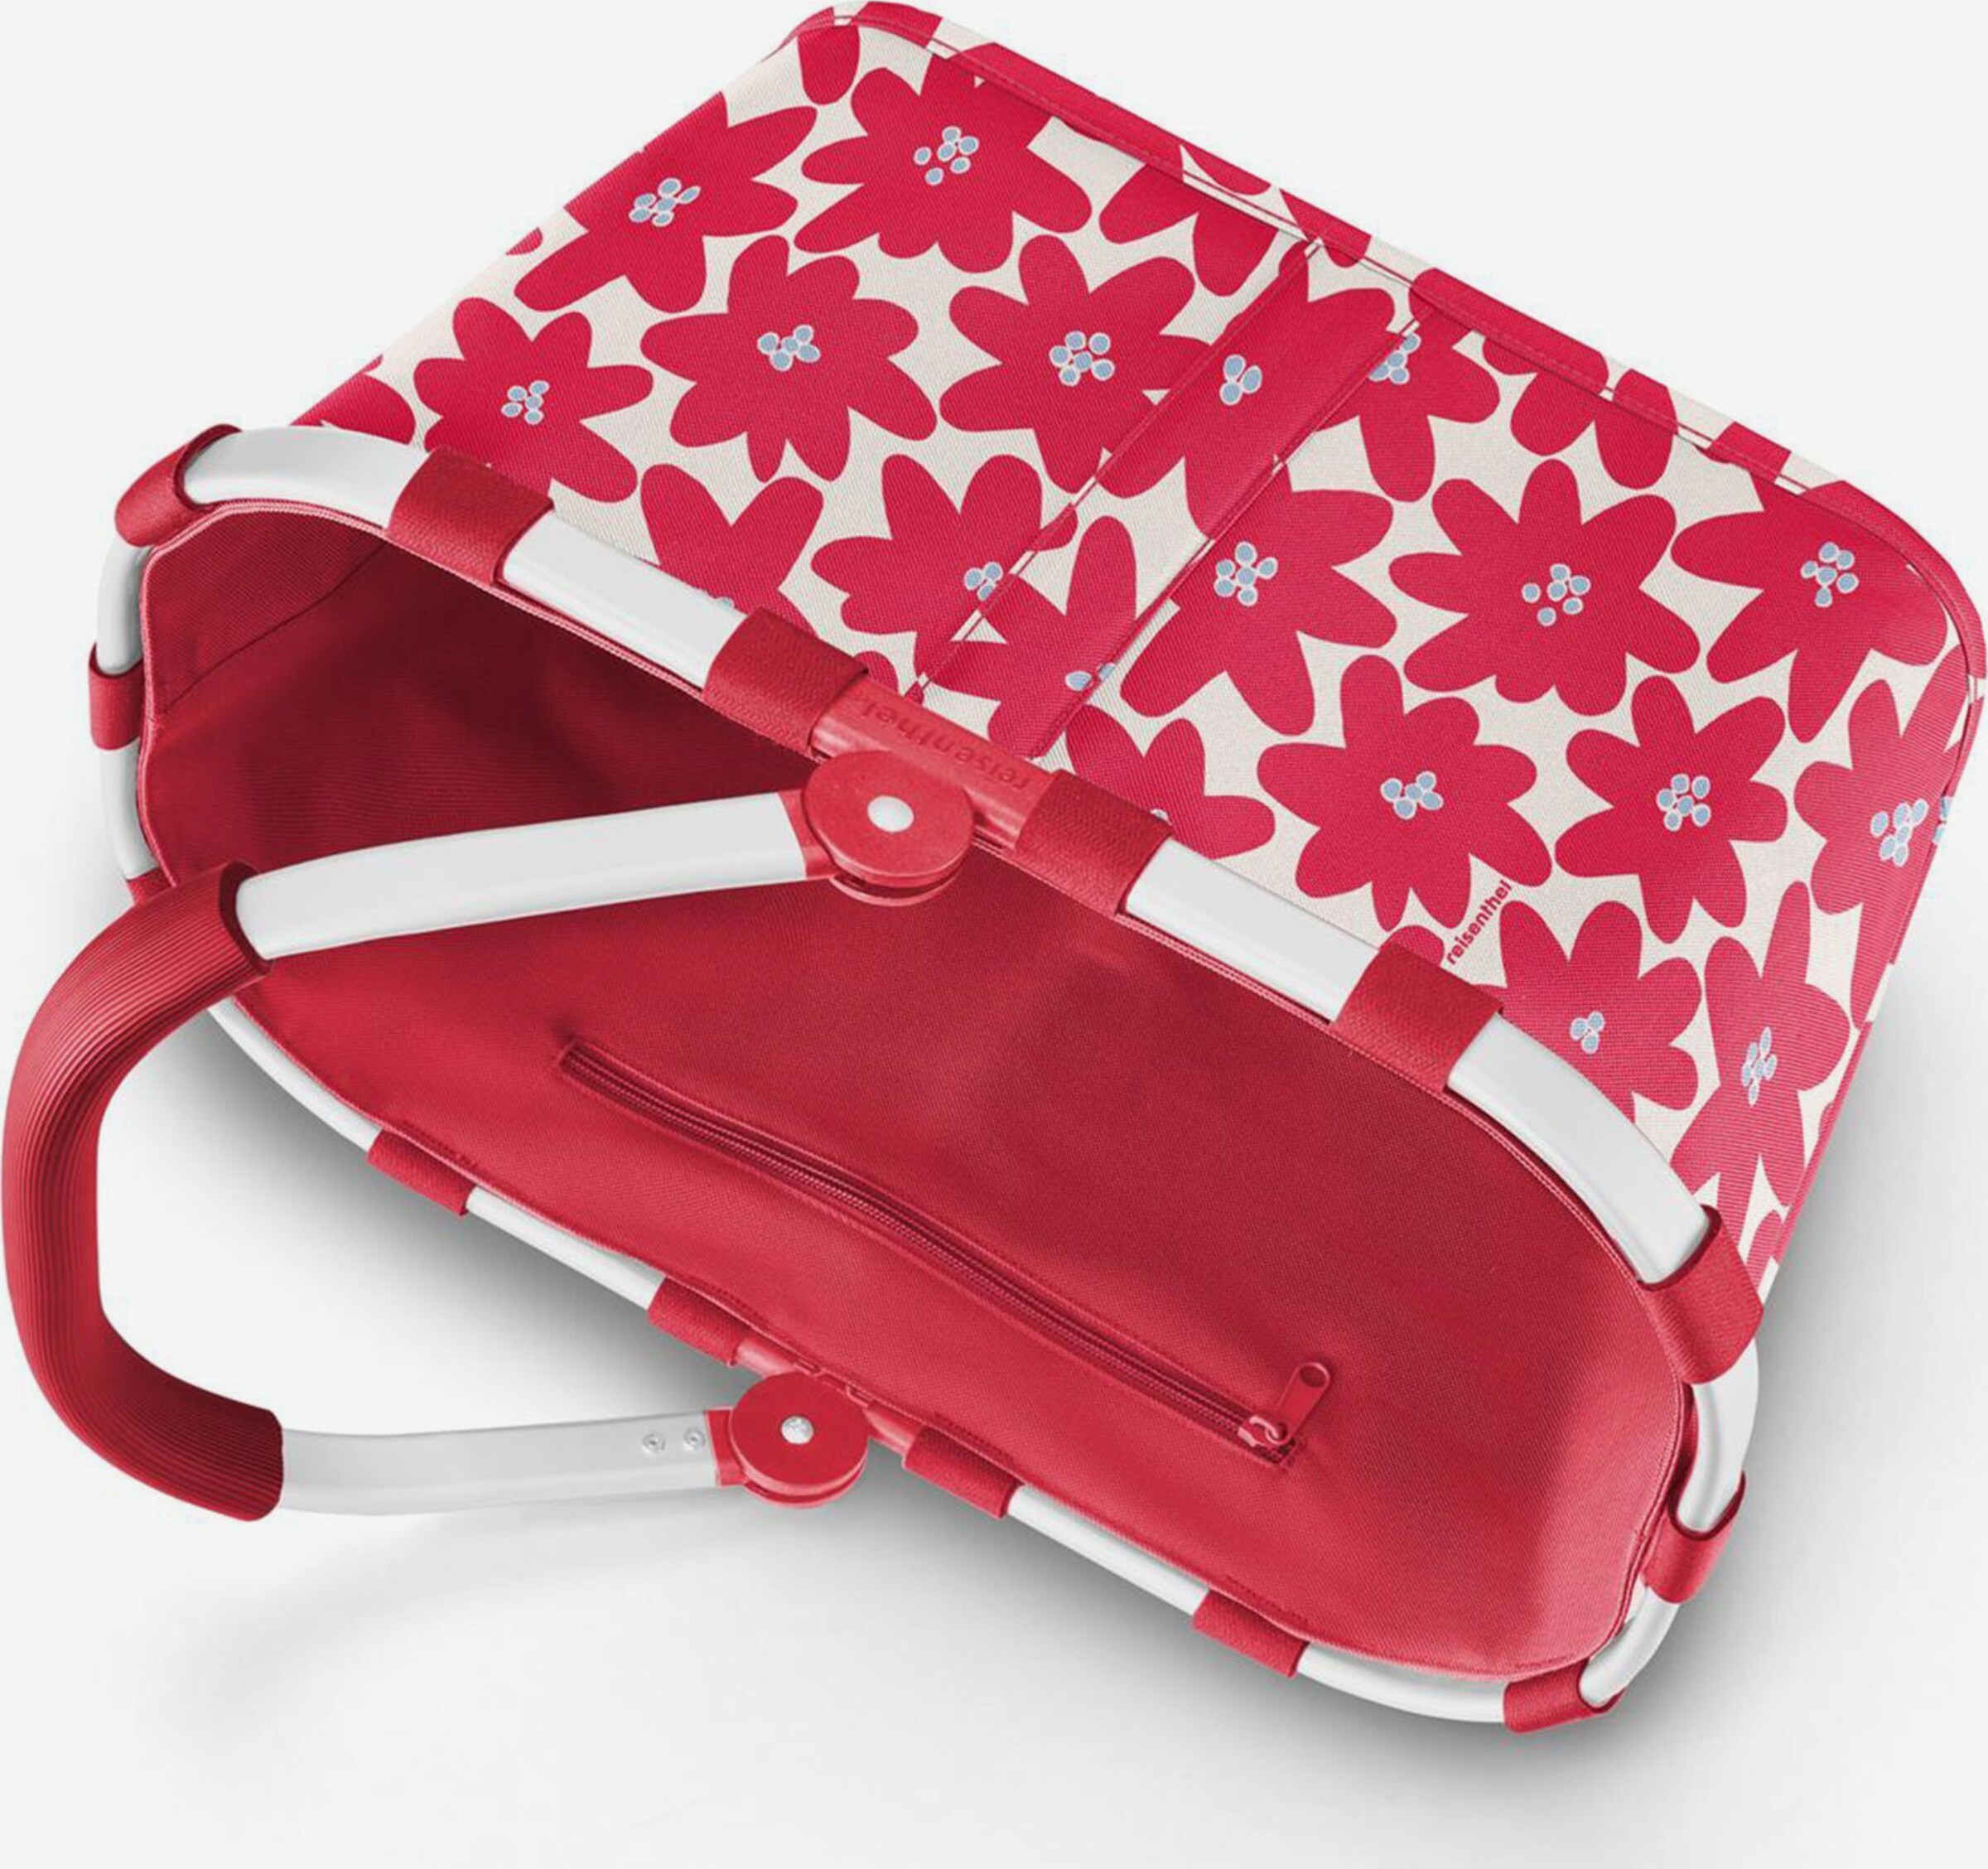 reisenthel® easyshoppingbag rot (Einkaufswagentasche, rot